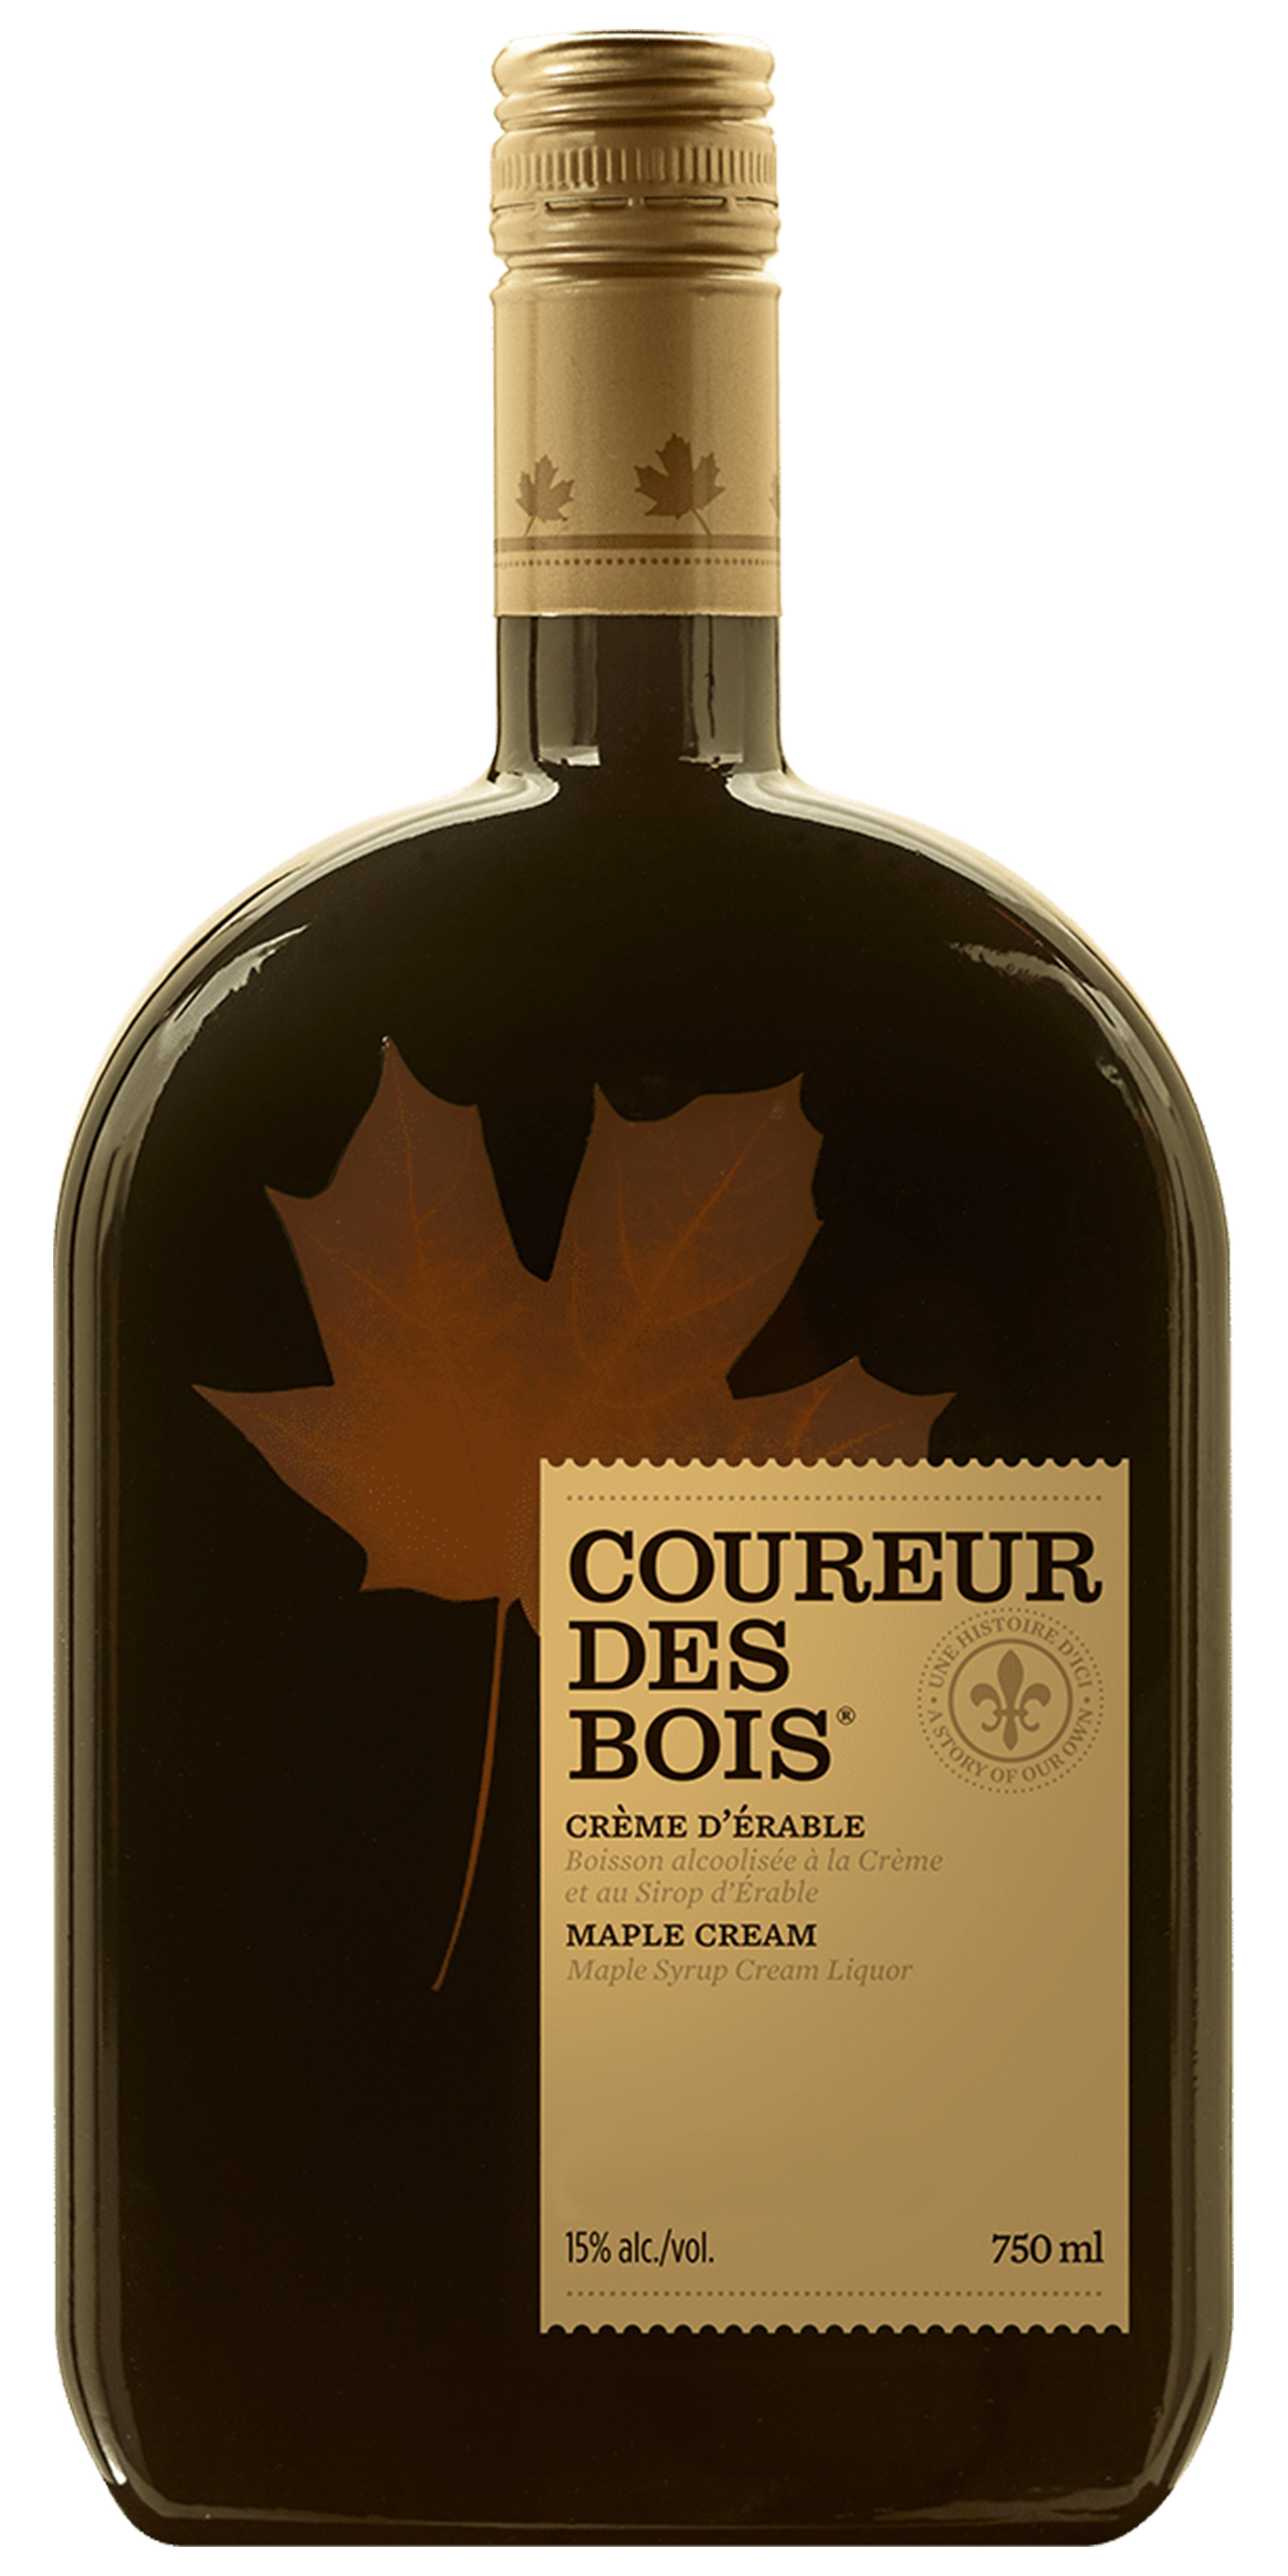 Where to buy Domaine Pinnacle Coureur des Bois Liqueur de Whisky a